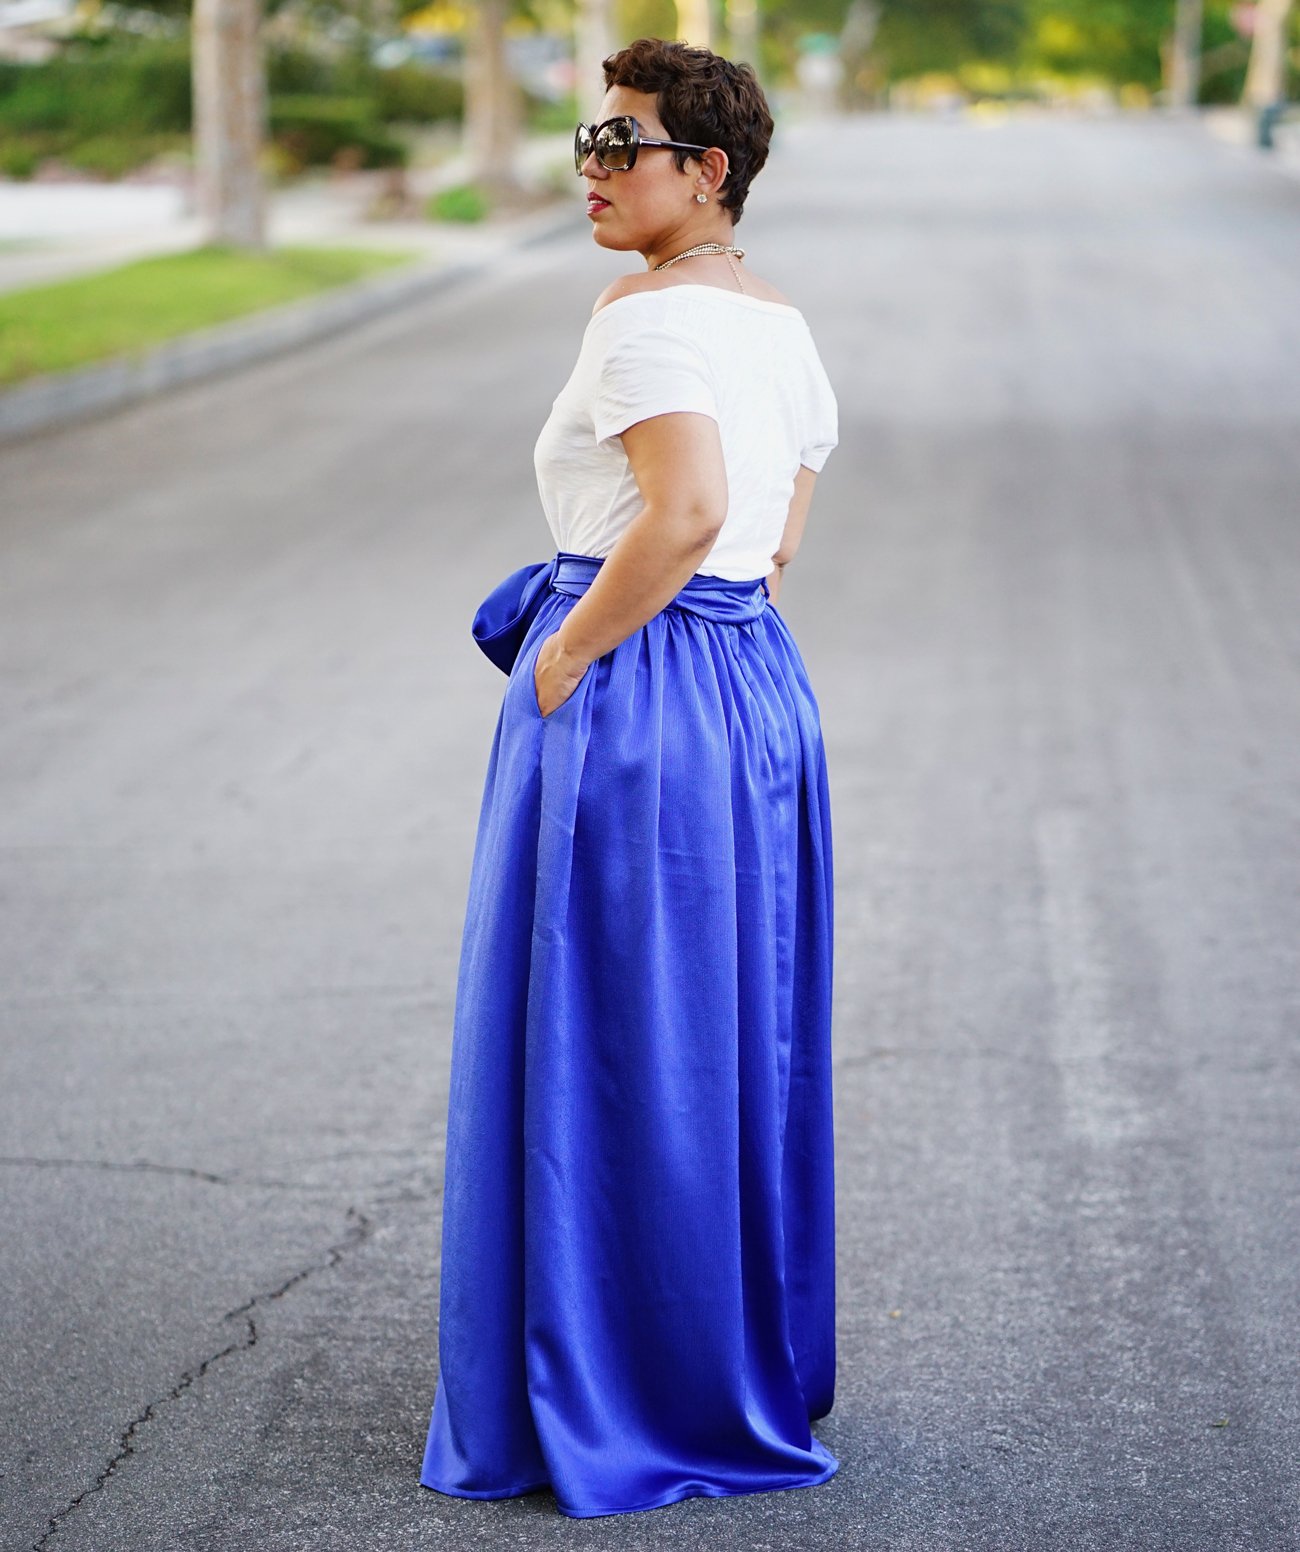 Royal Blue Chiffon Maxi Skirt. Flowvy Summer Floor Length Long Skirt ·  Letsglamup · Online Store Powered by Storenvy